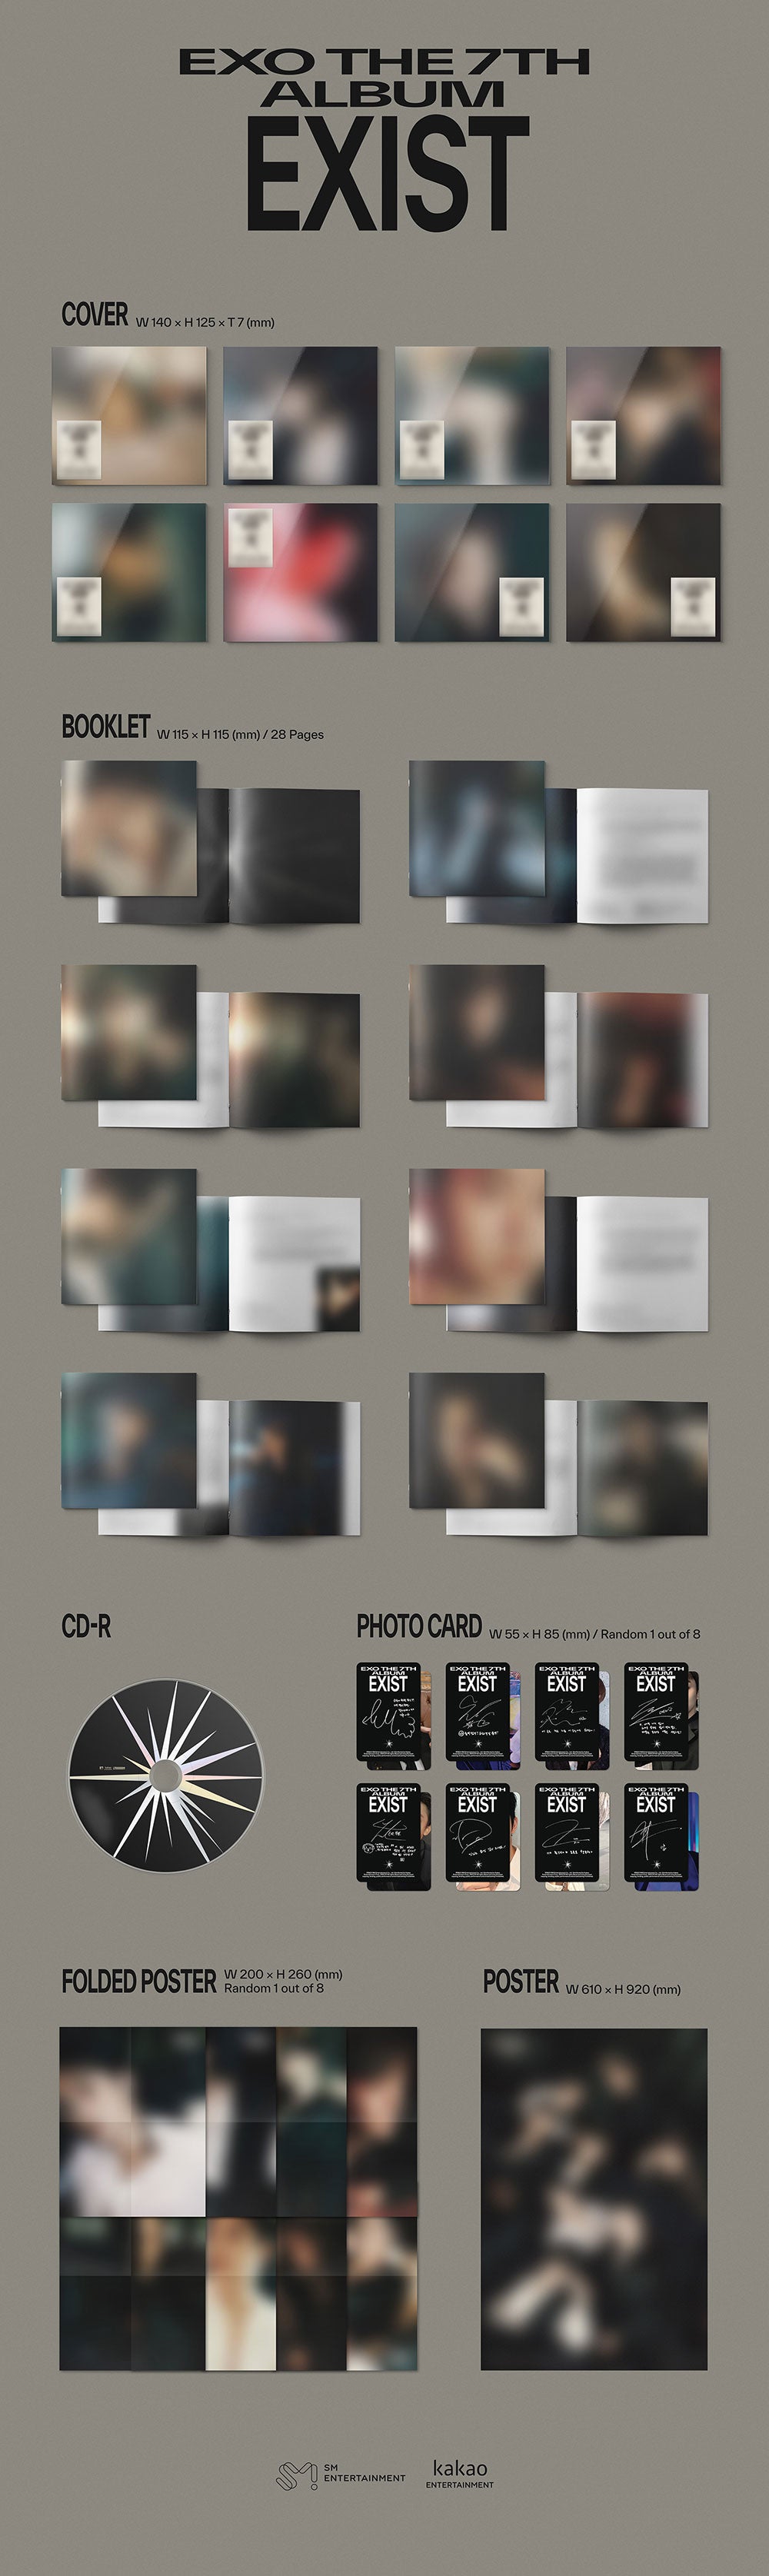 EXO - EXIST (7th Album) Digipack Ver.